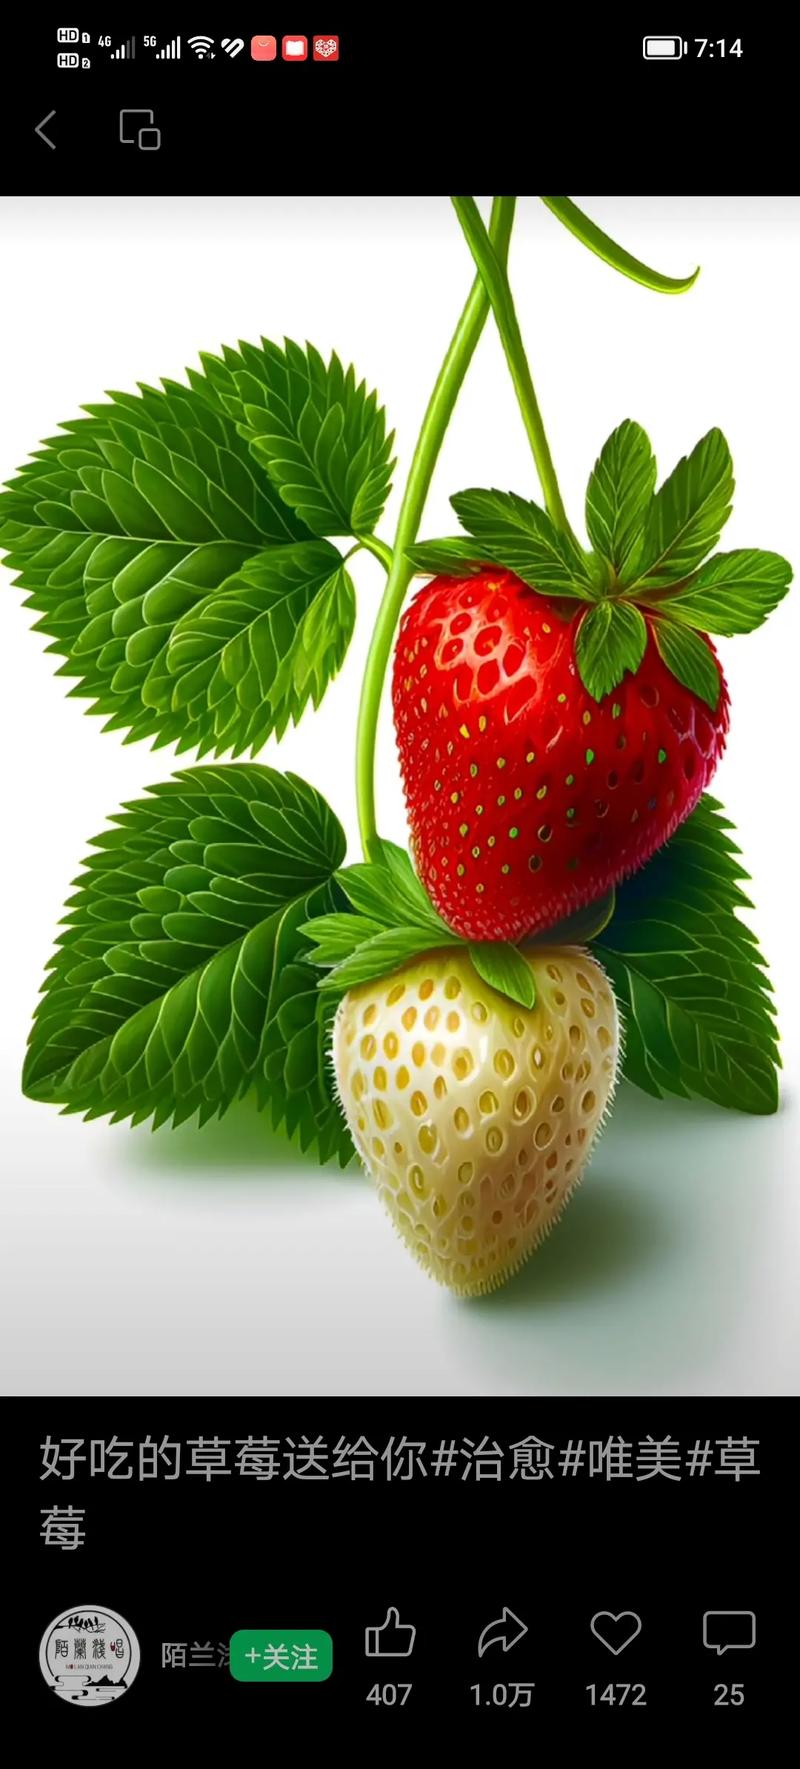 hd1 7:14 好吃的草莓送给你#治愈#唯美#草 莓 陌兰 - 抖音